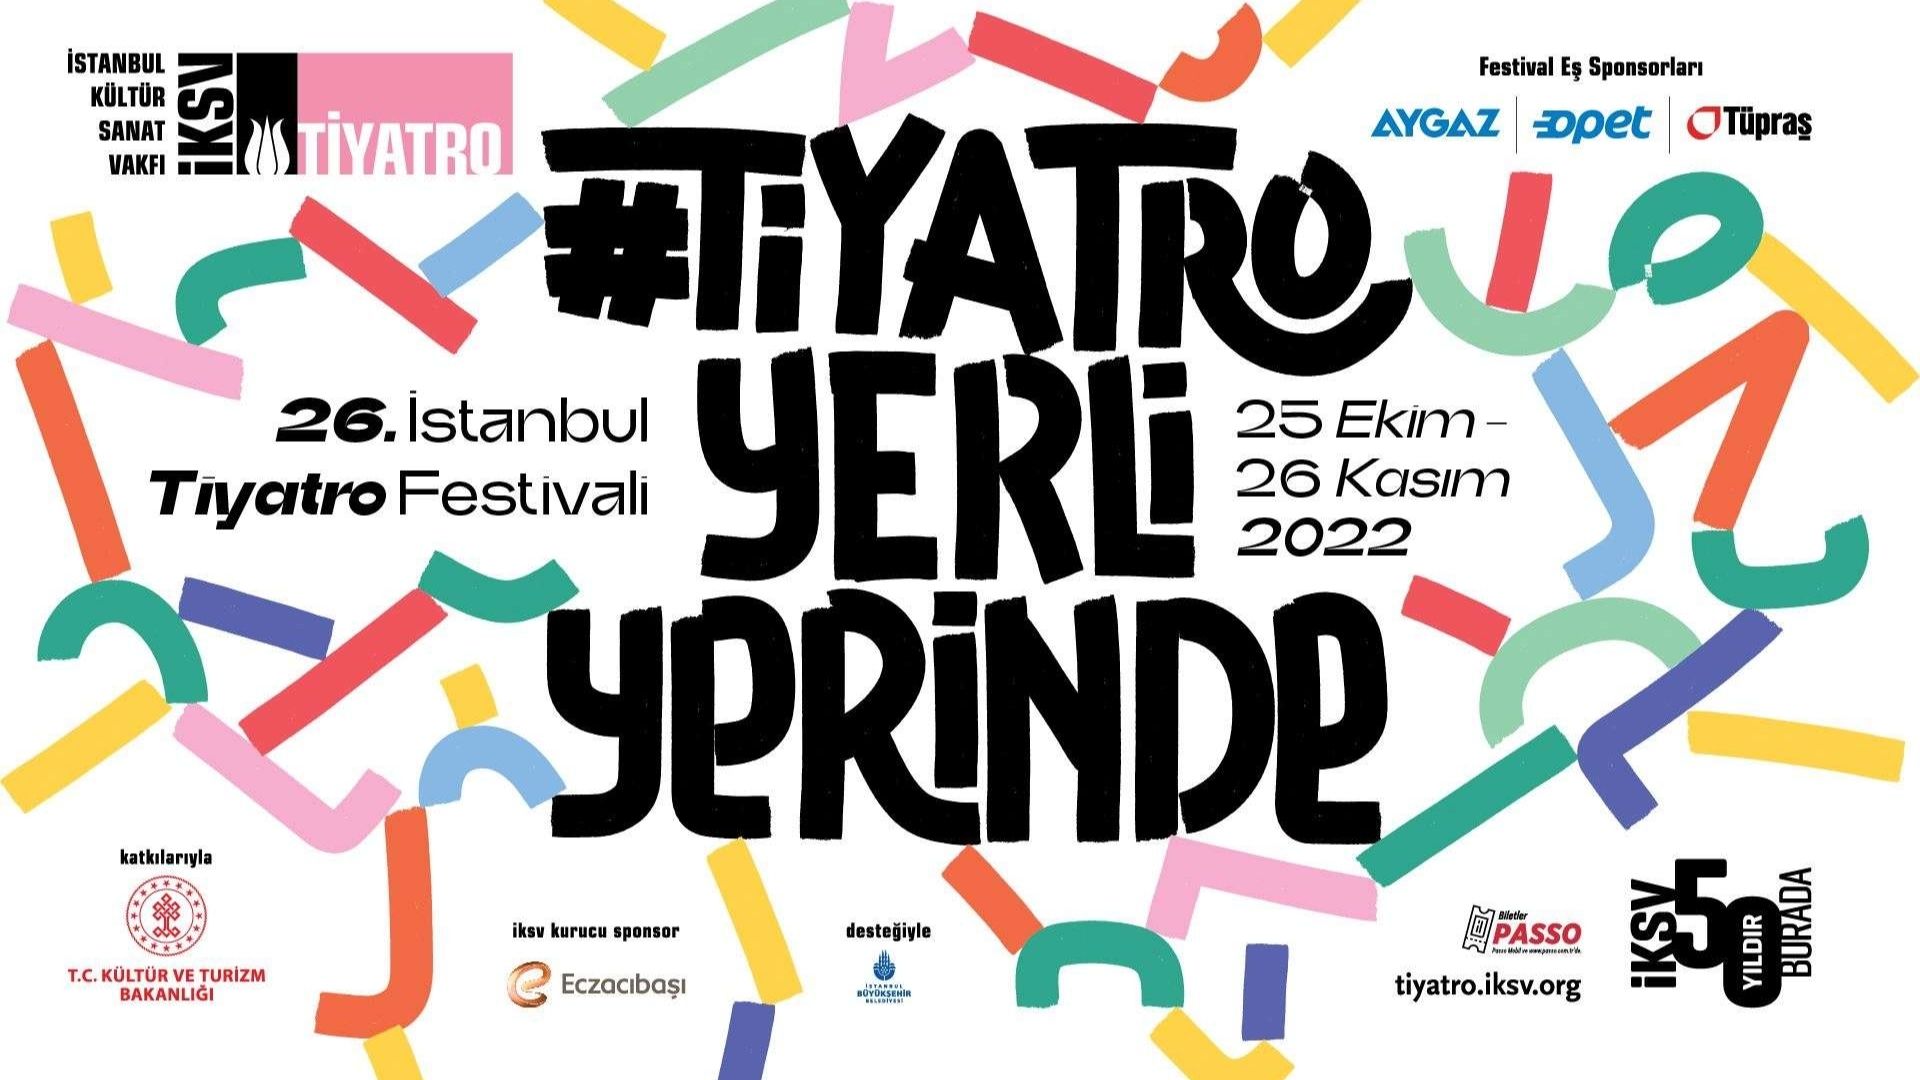 26. istanbul tiyatro festivali 2022 festival